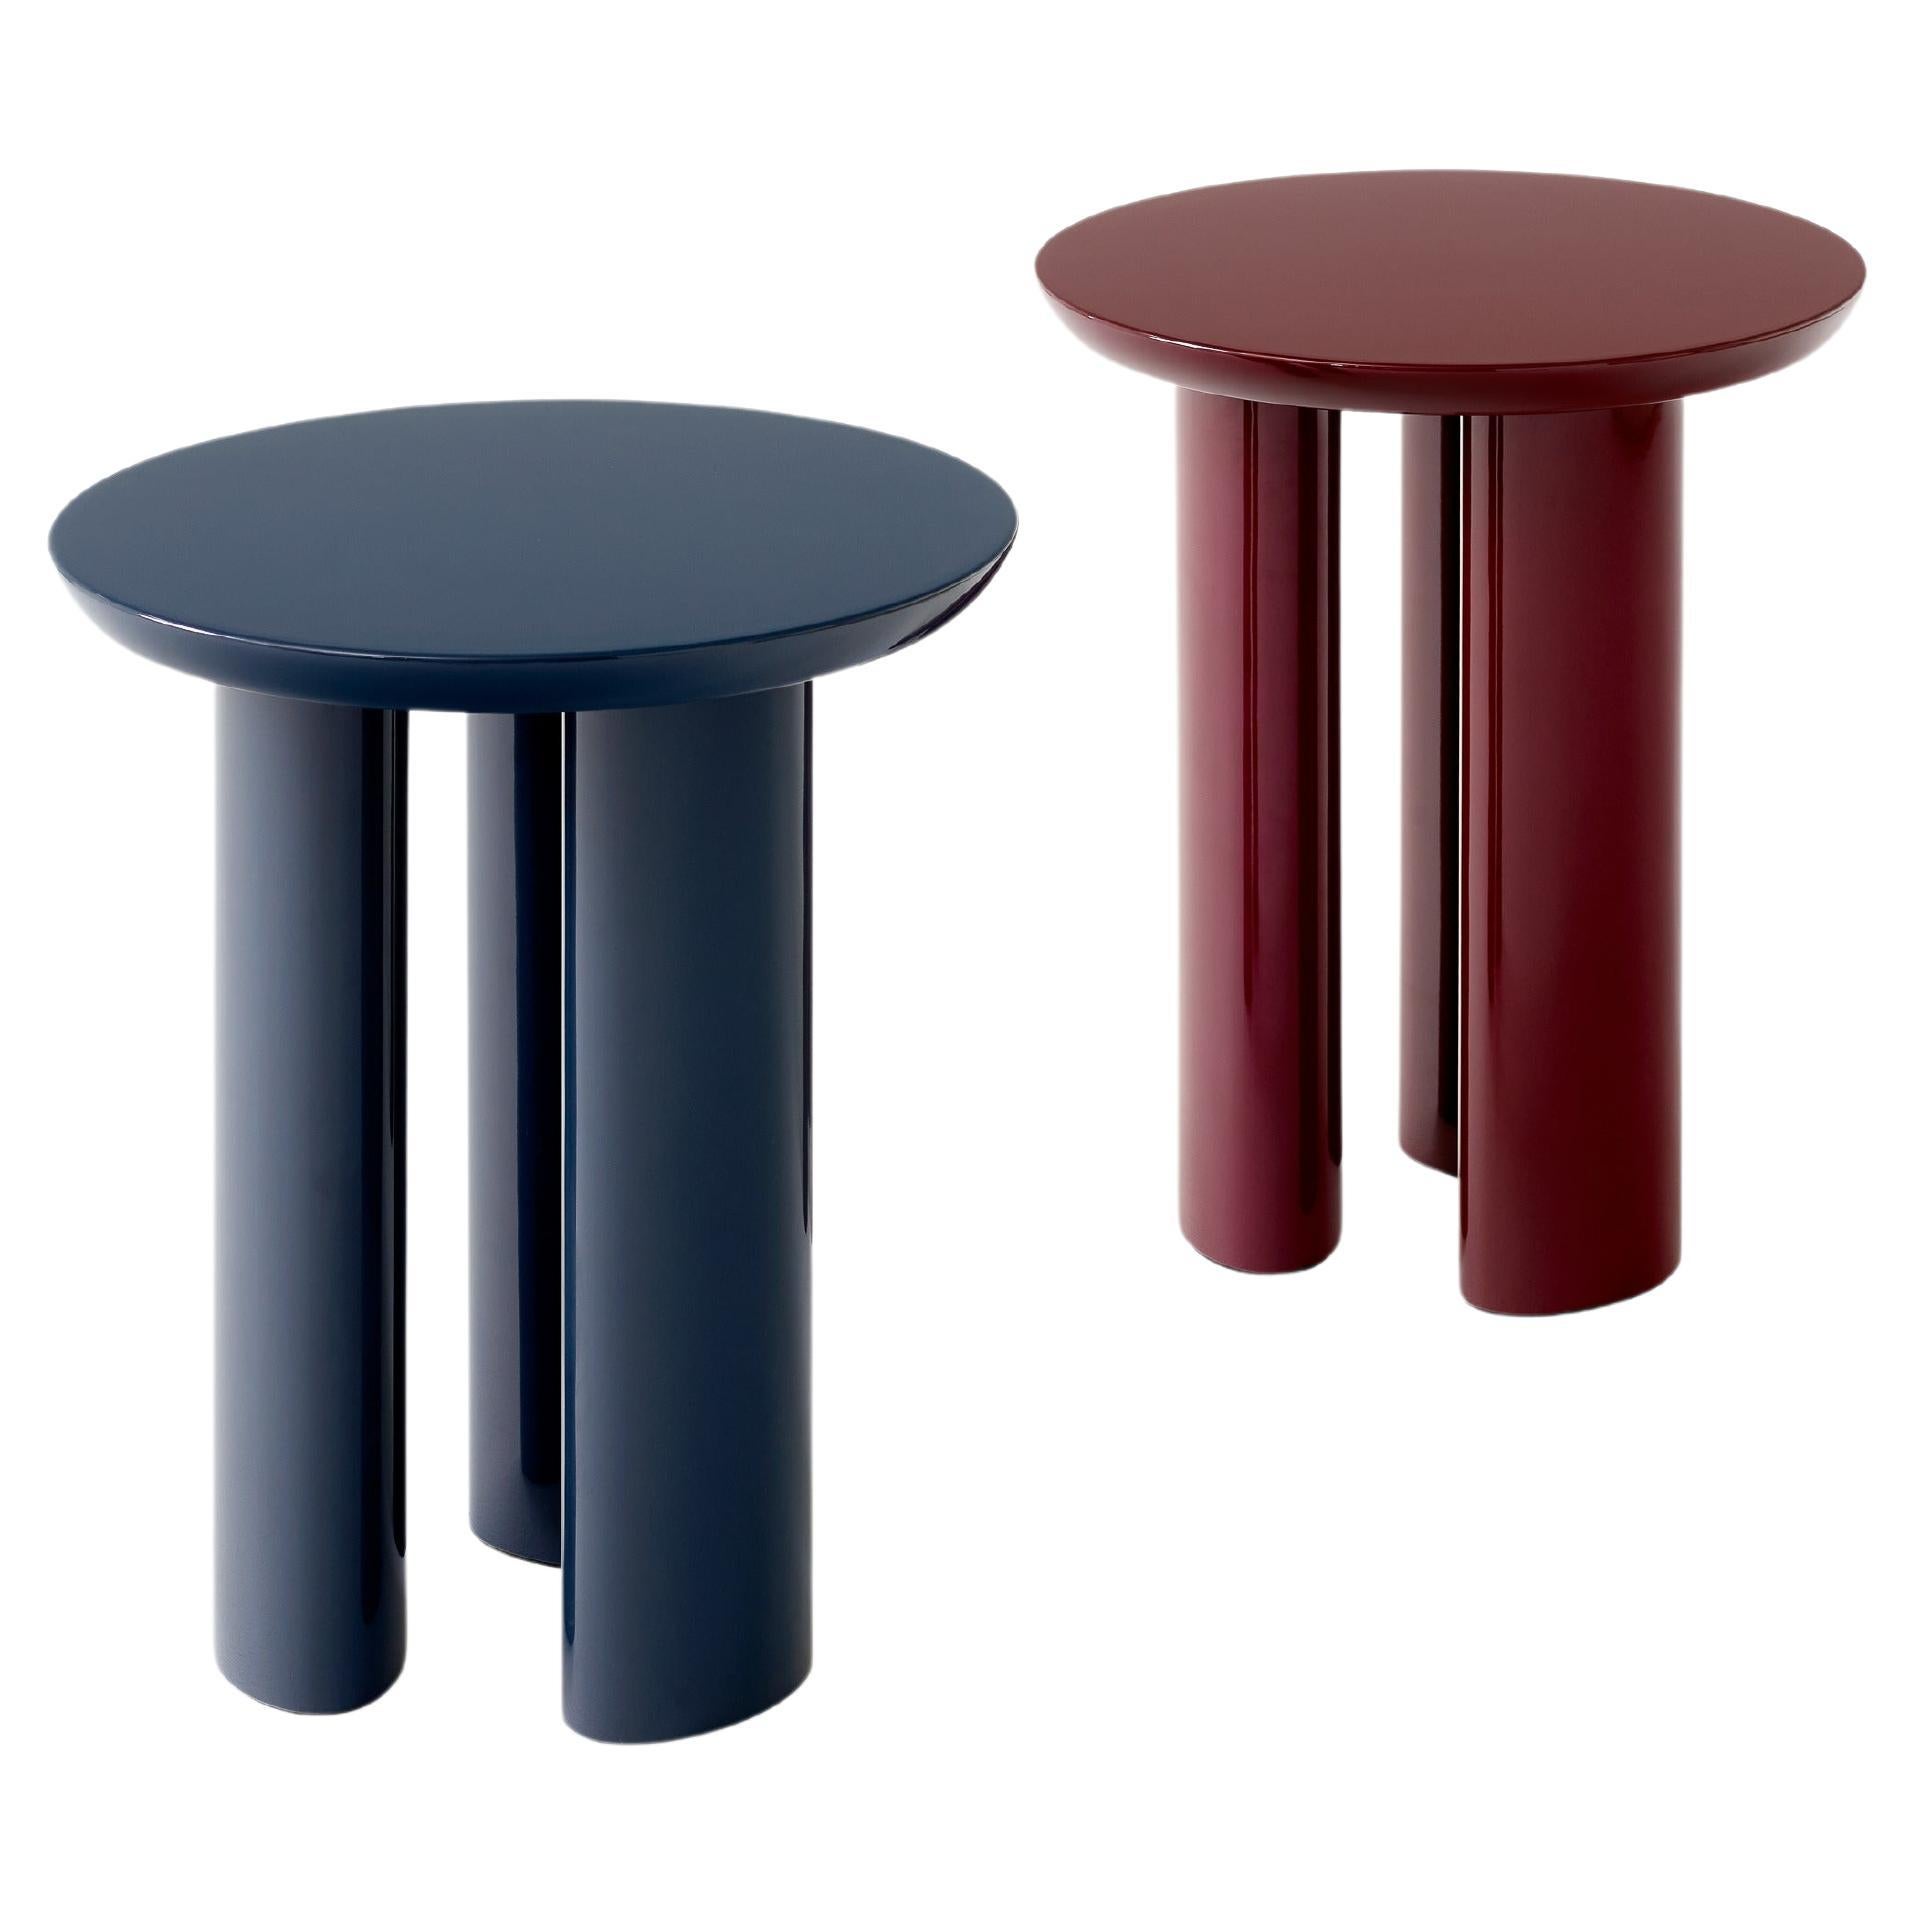 Set von Tung JA3-Tisch in Burgundy Rot und Stahl mit blauer Seite, von John Astbury für &T